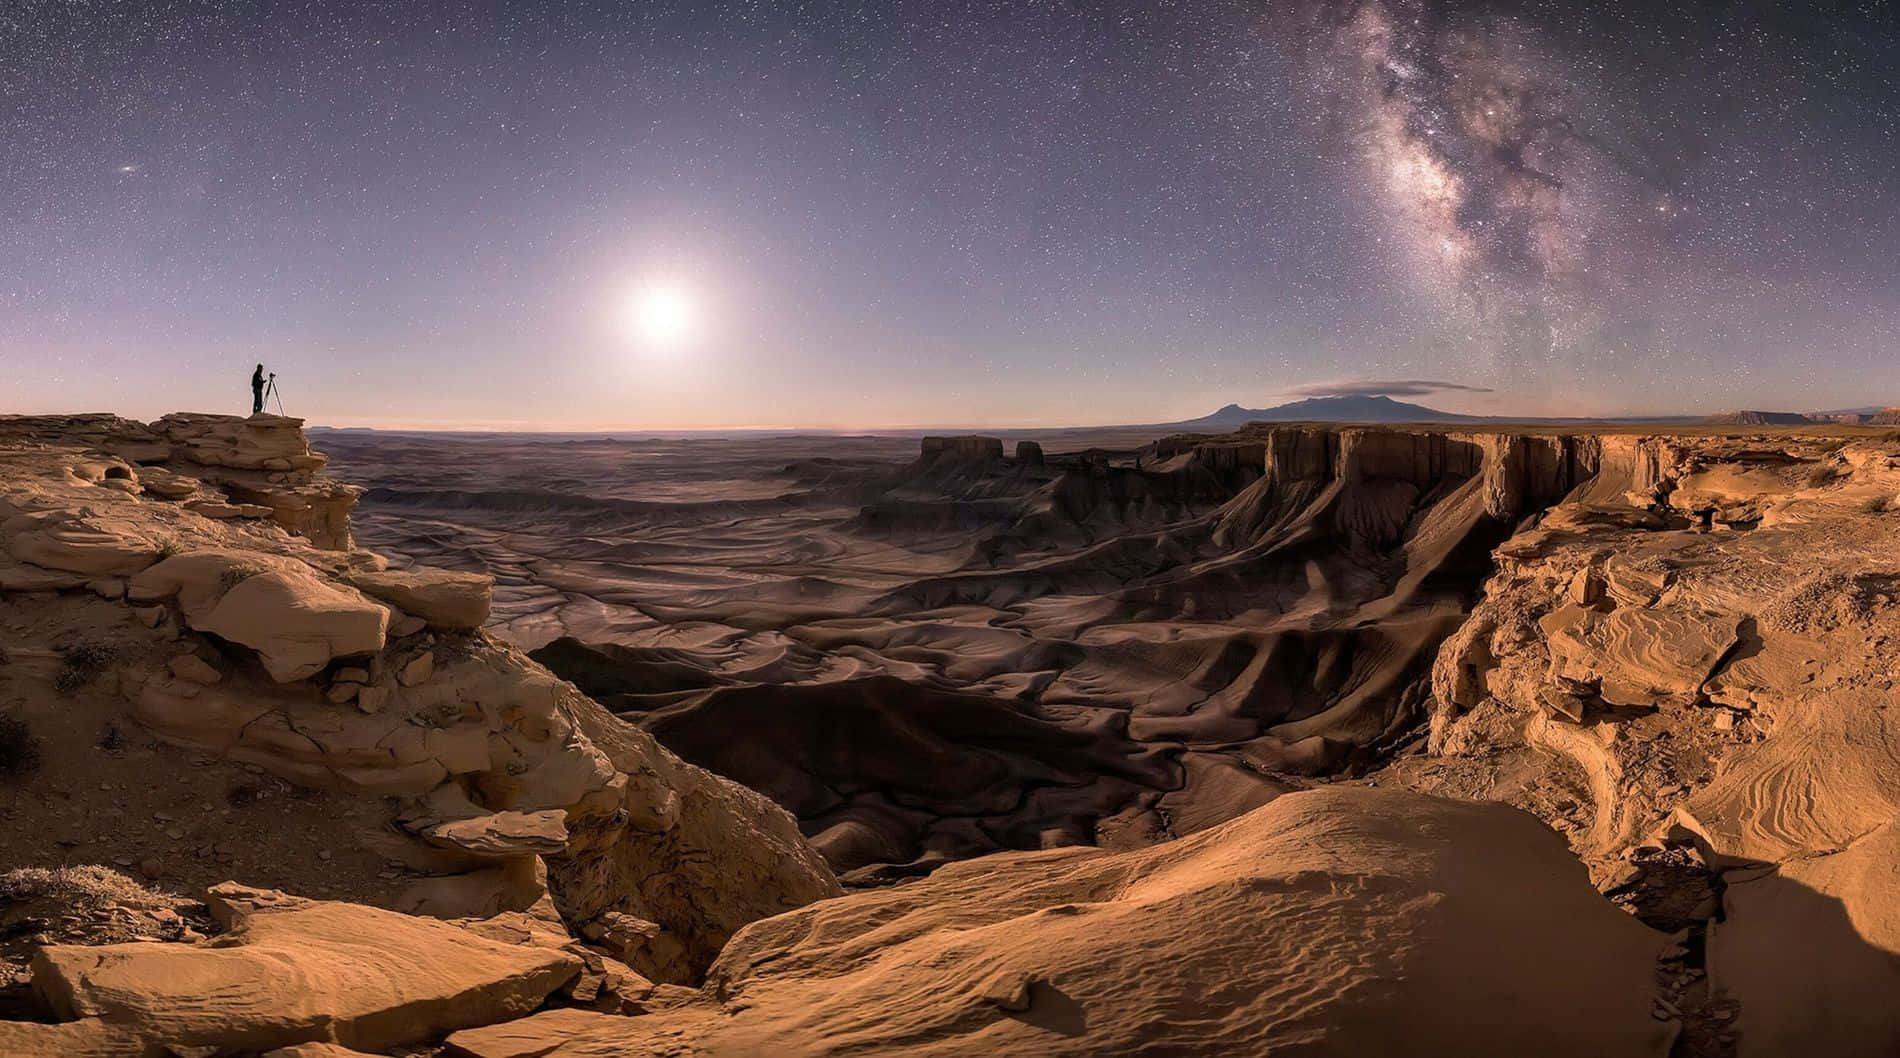 Imagende Astronomía De Una Noche Estrellada En El Desierto